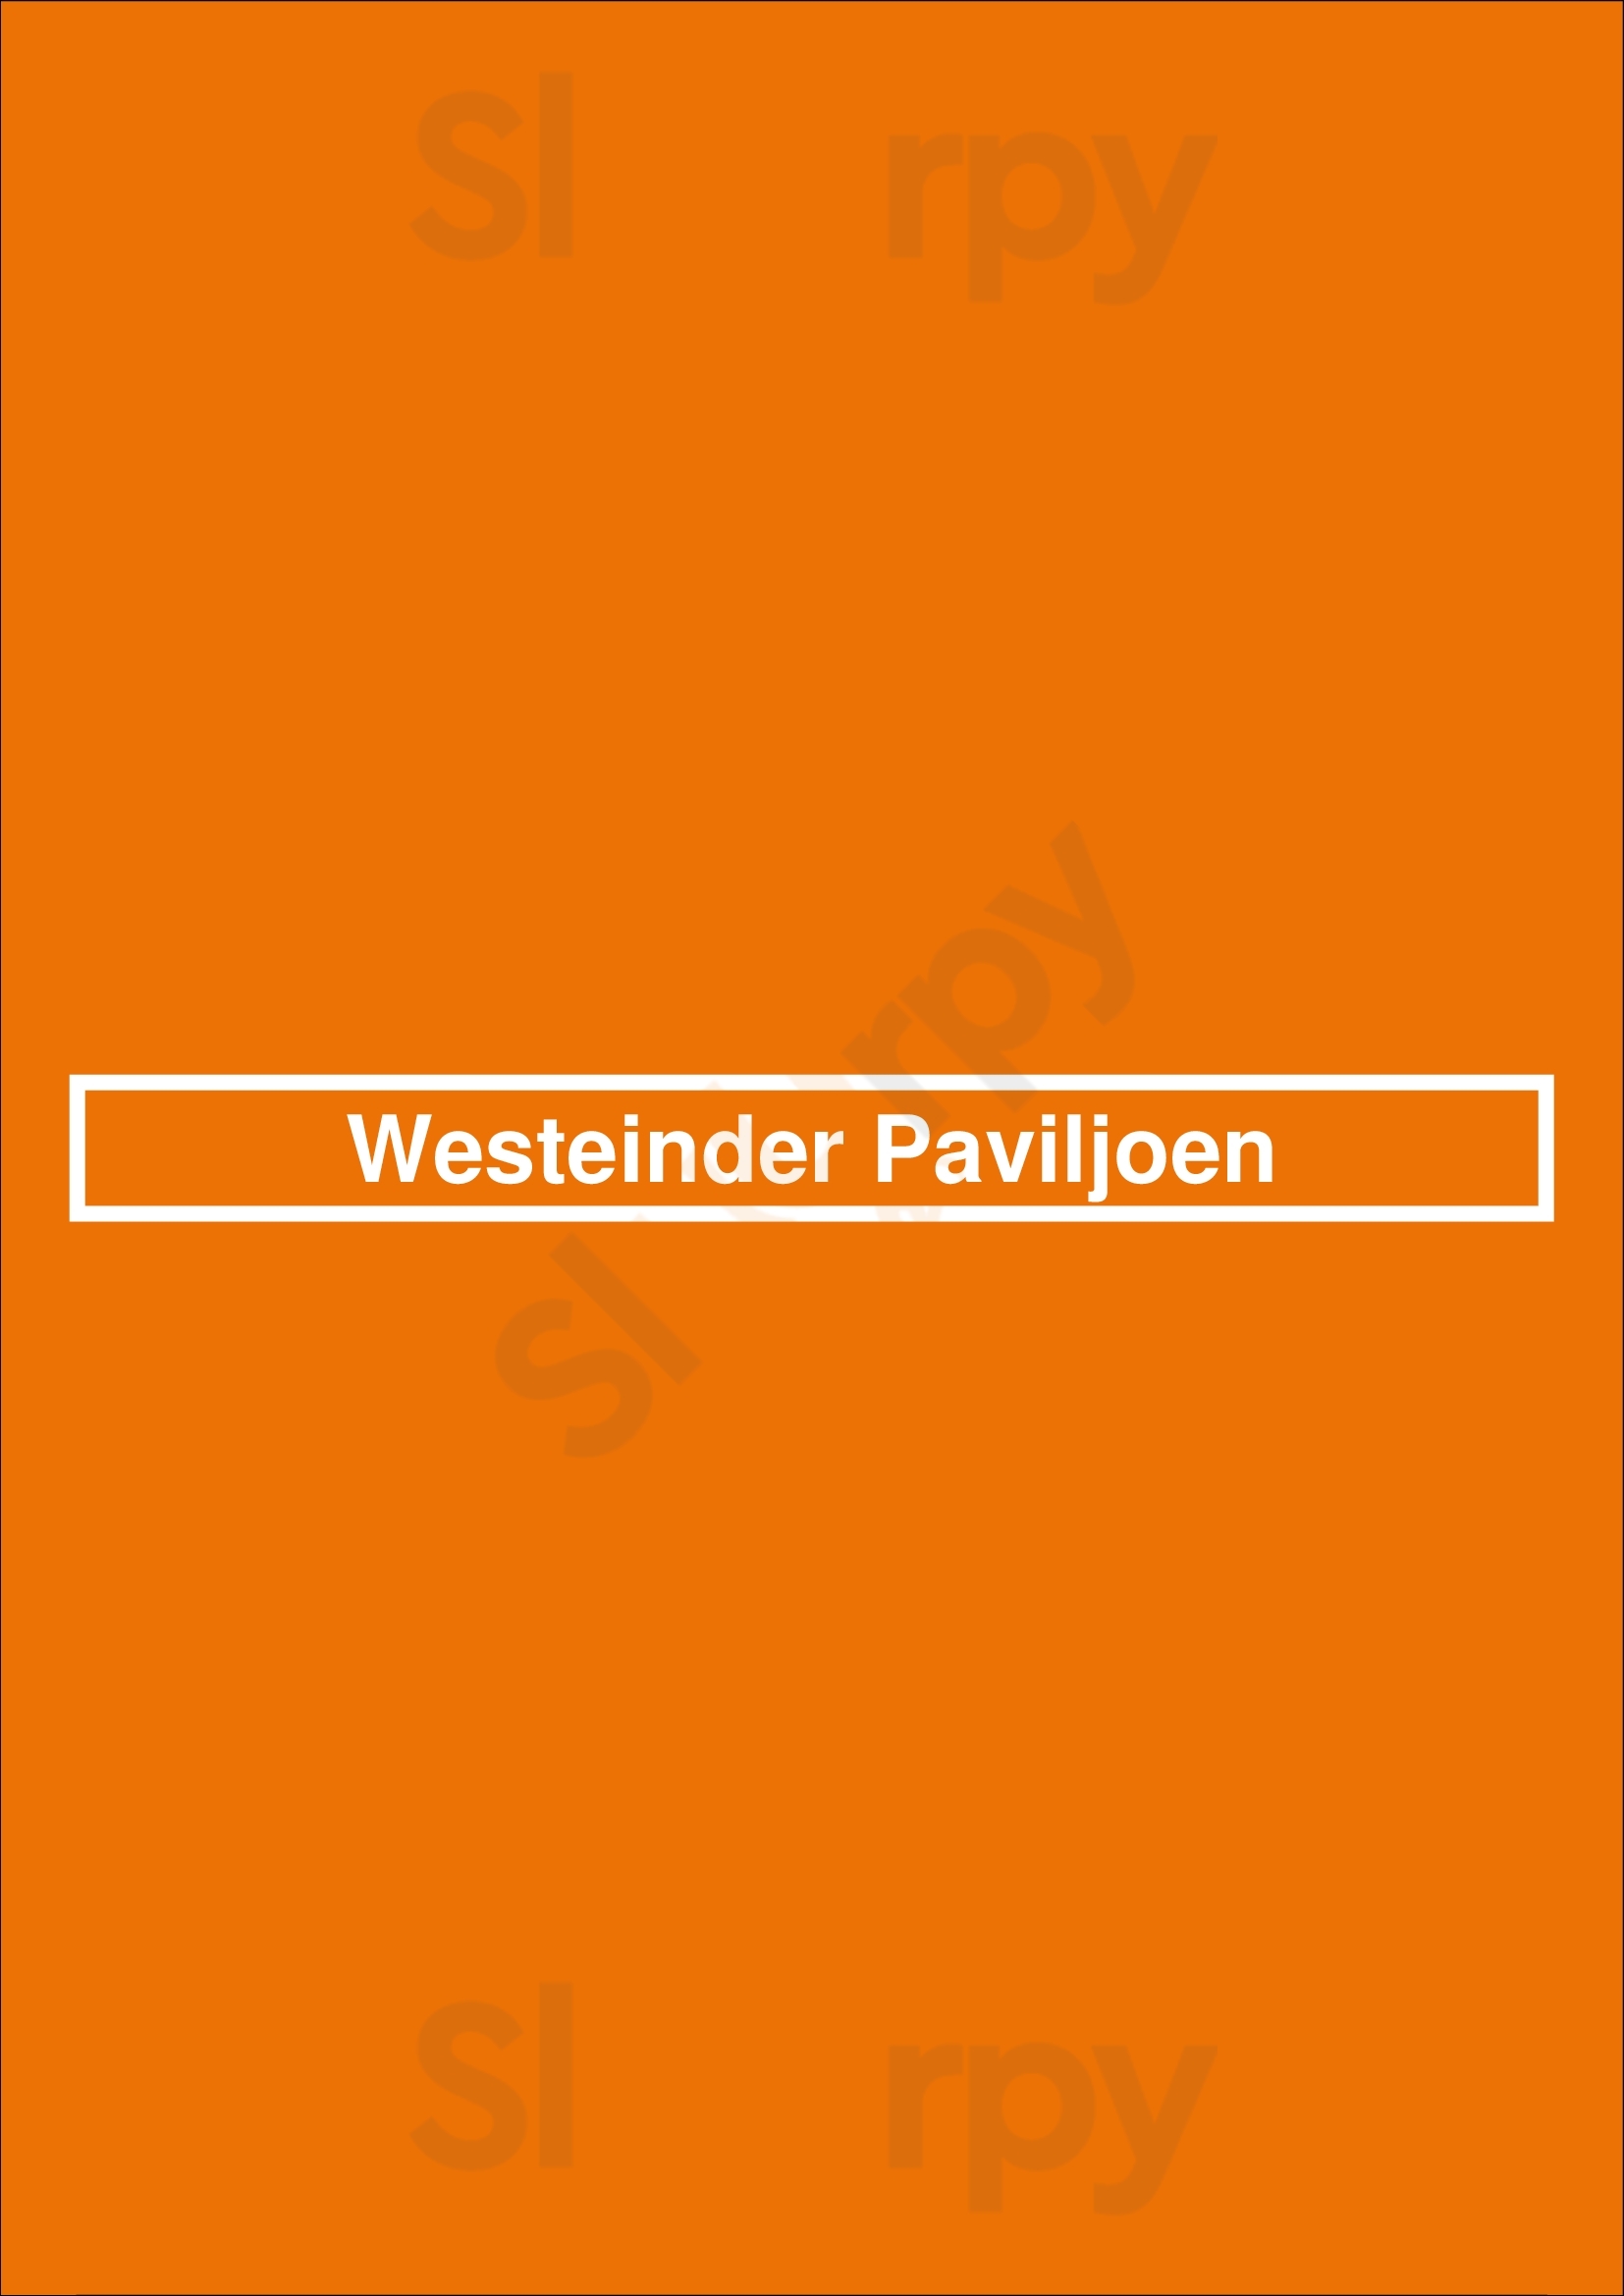 Westeinder Paviljoen Aalsmeer Menu - 1